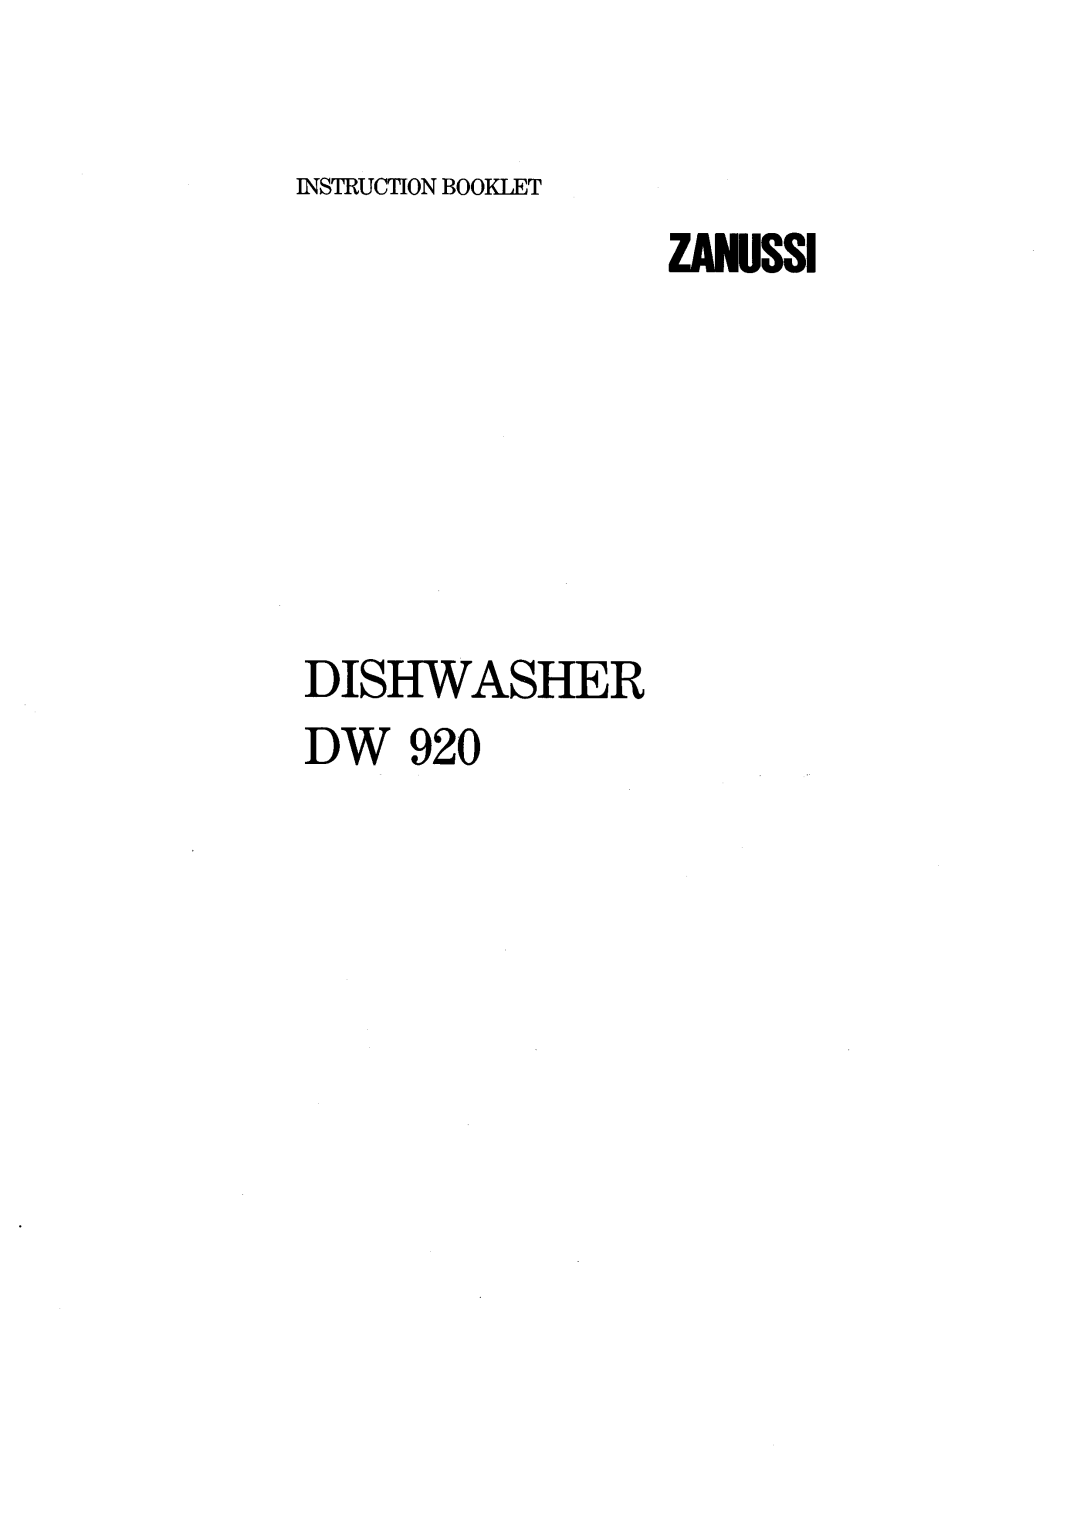 Zanussi DW 920 manual 